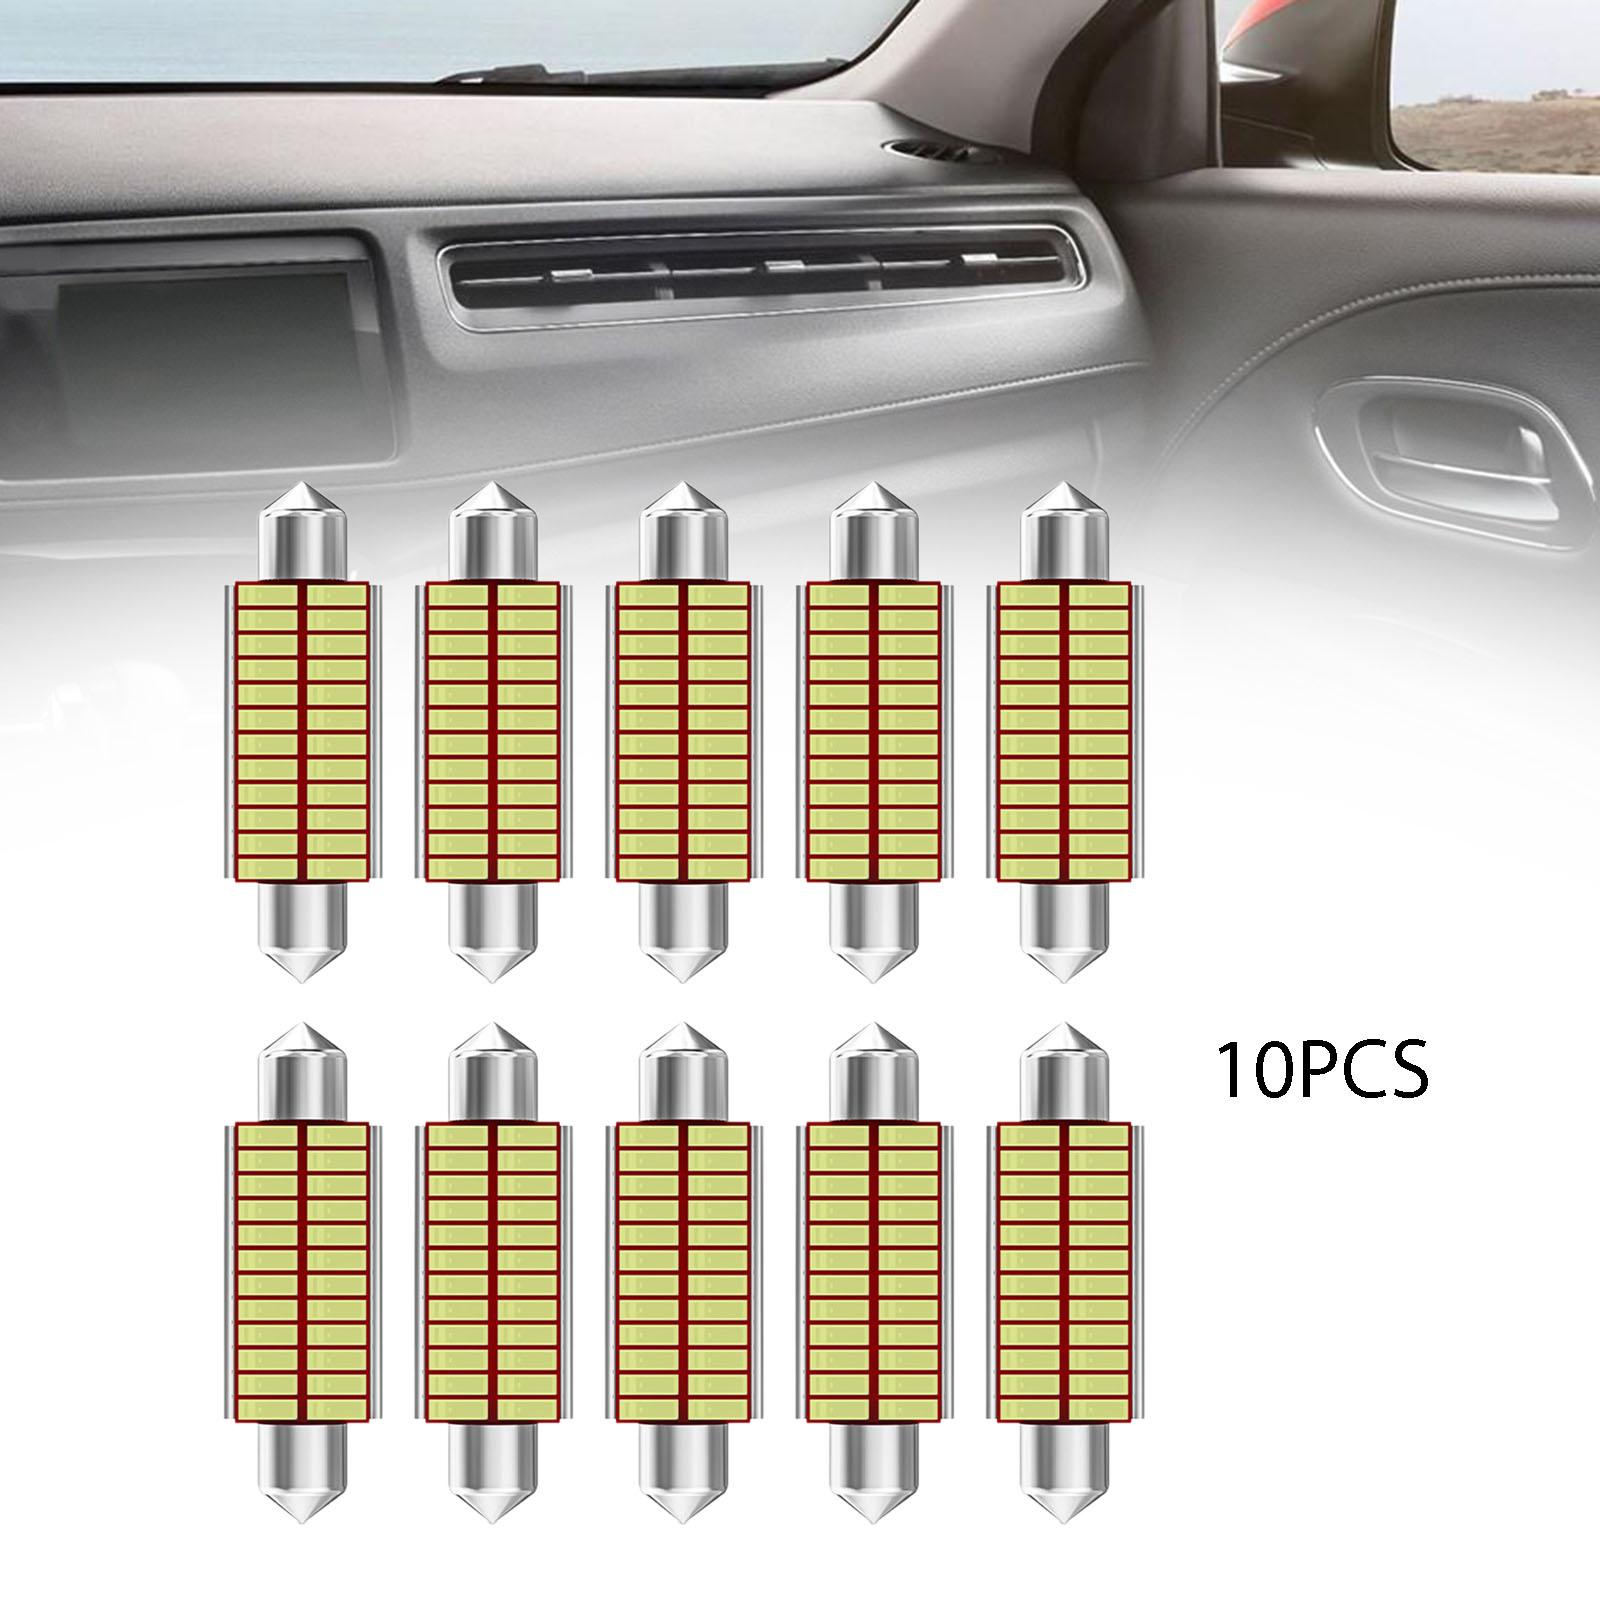 10Pcs Car Interior Light Trunk Light Accessories Light Dome Light Bulbs 41mm